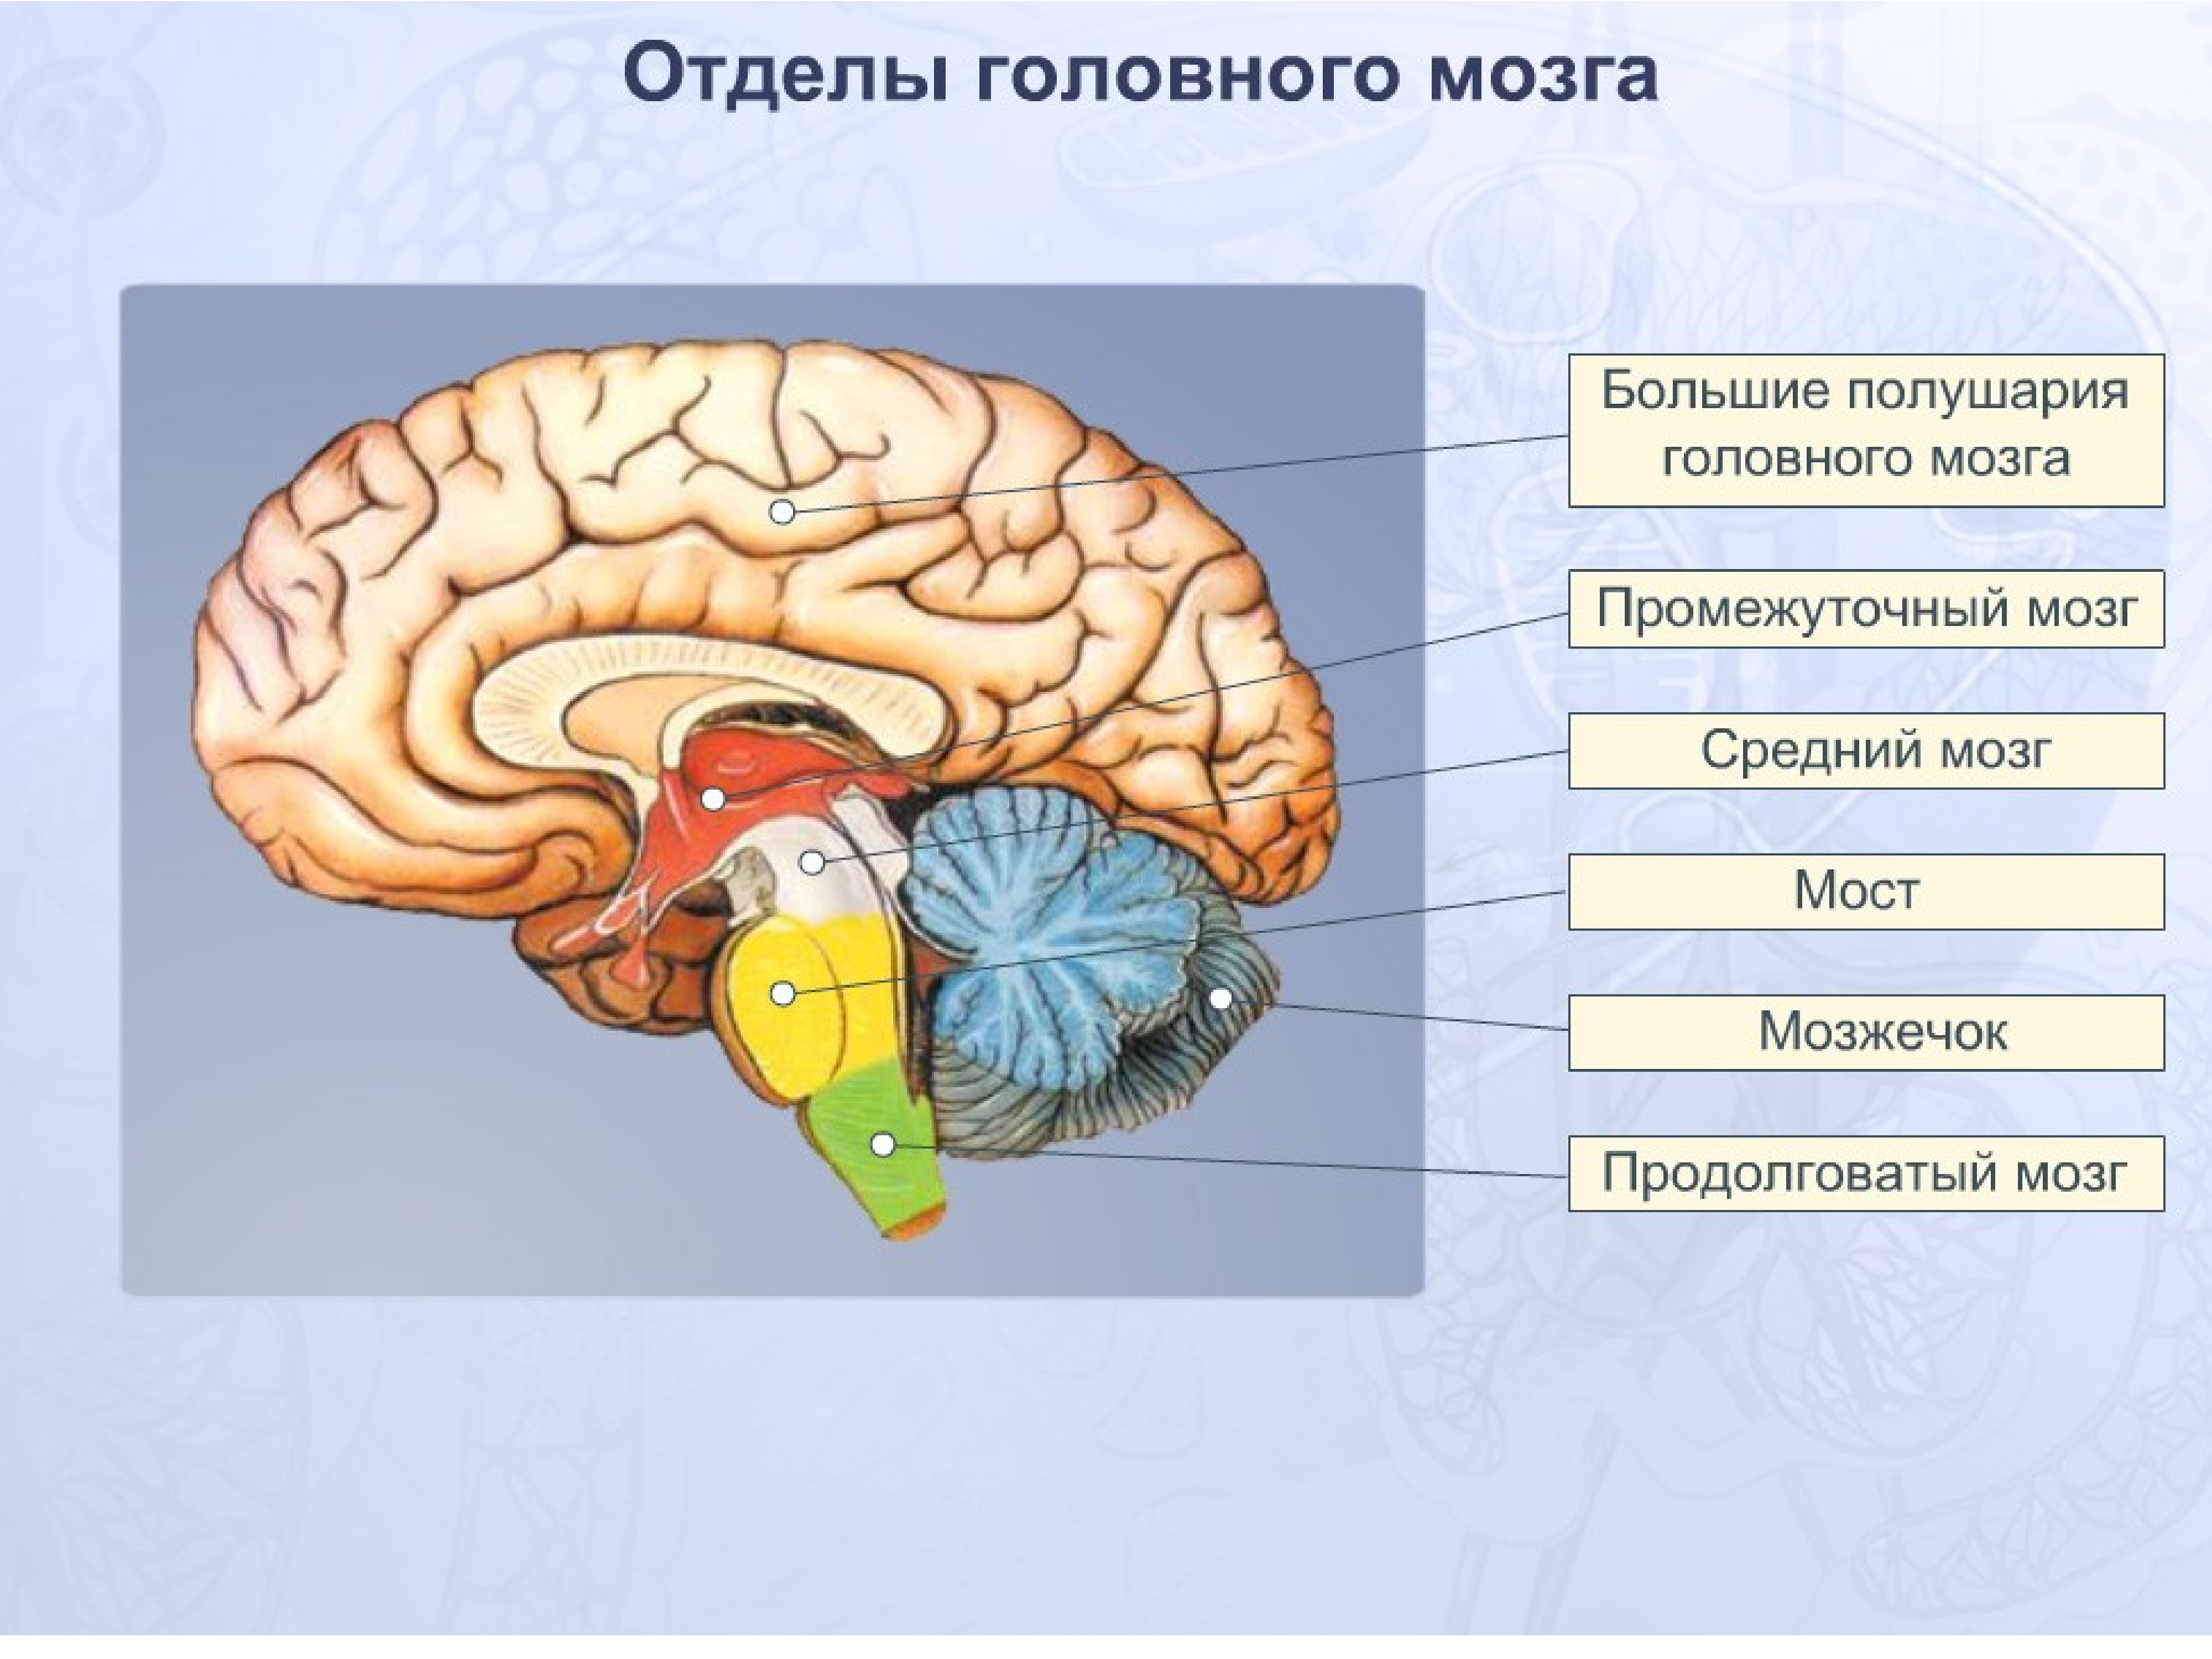 Описать функции отделов головного мозга. Схема основных отделов головного мозга. Отделы головного мозга анатомия. Название отделов головного мозга. Основные пять отделов головного мозга:.